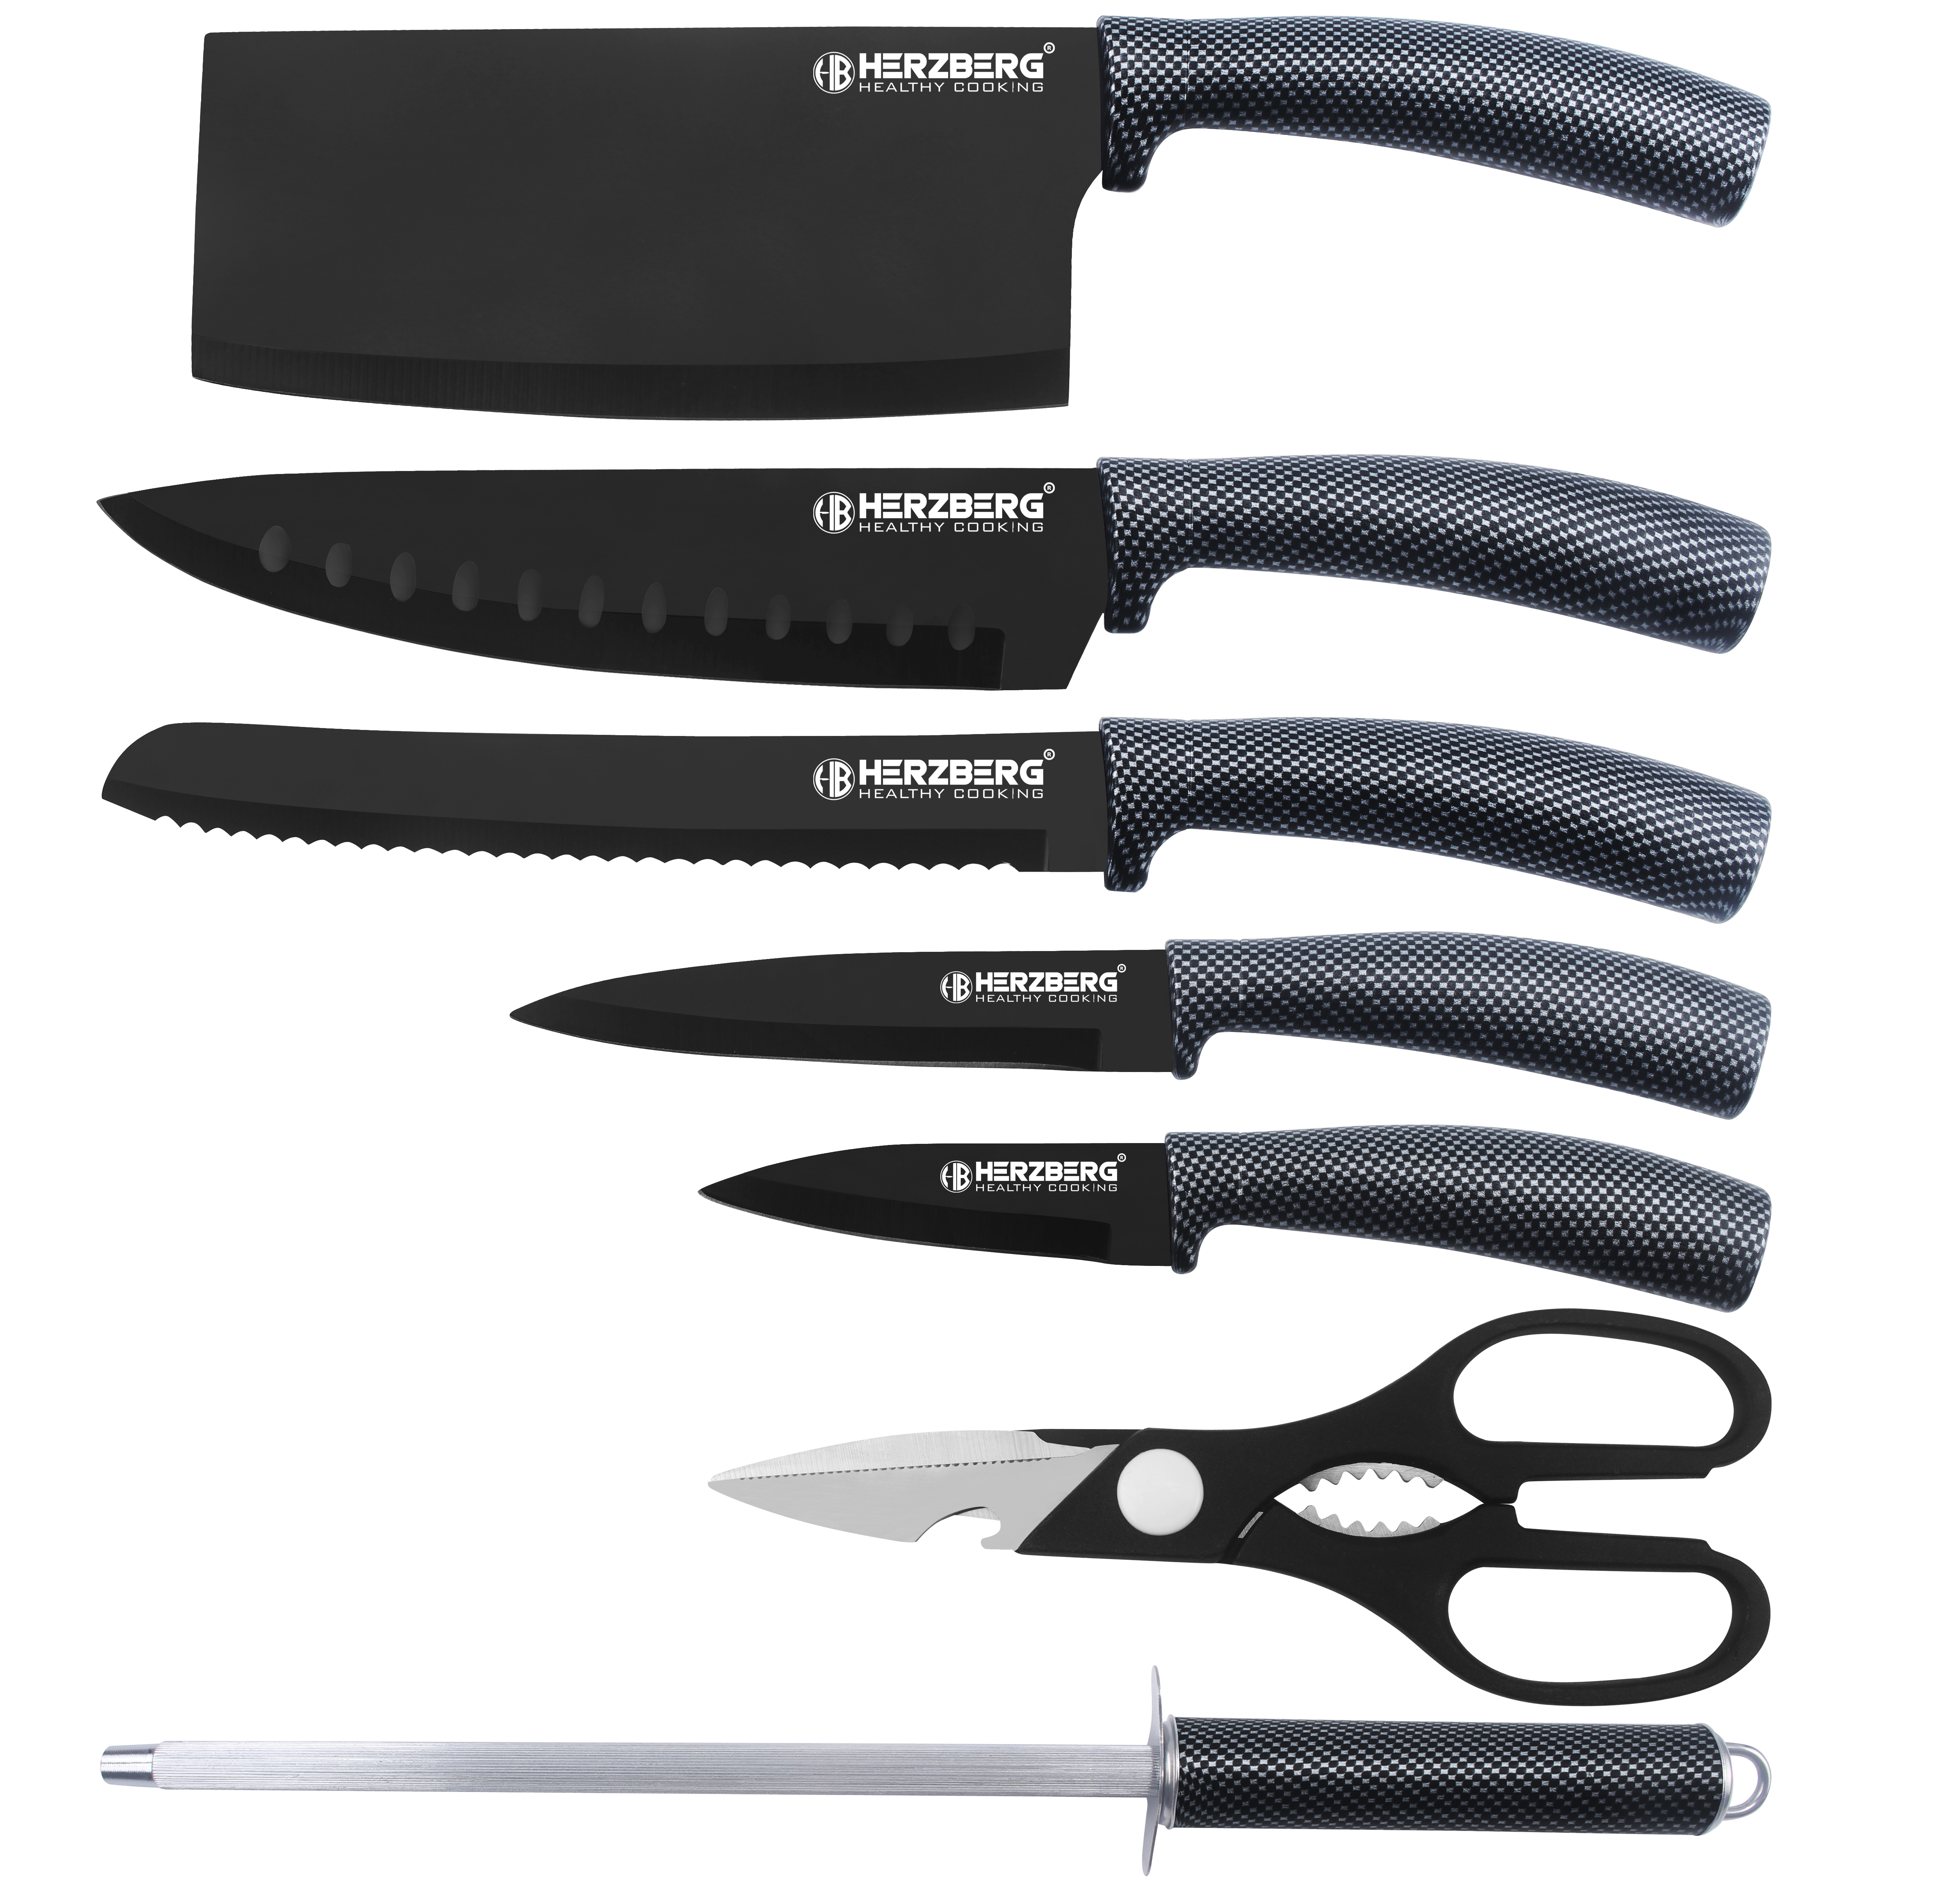 Messer, Messerset, Messer für alle Arten